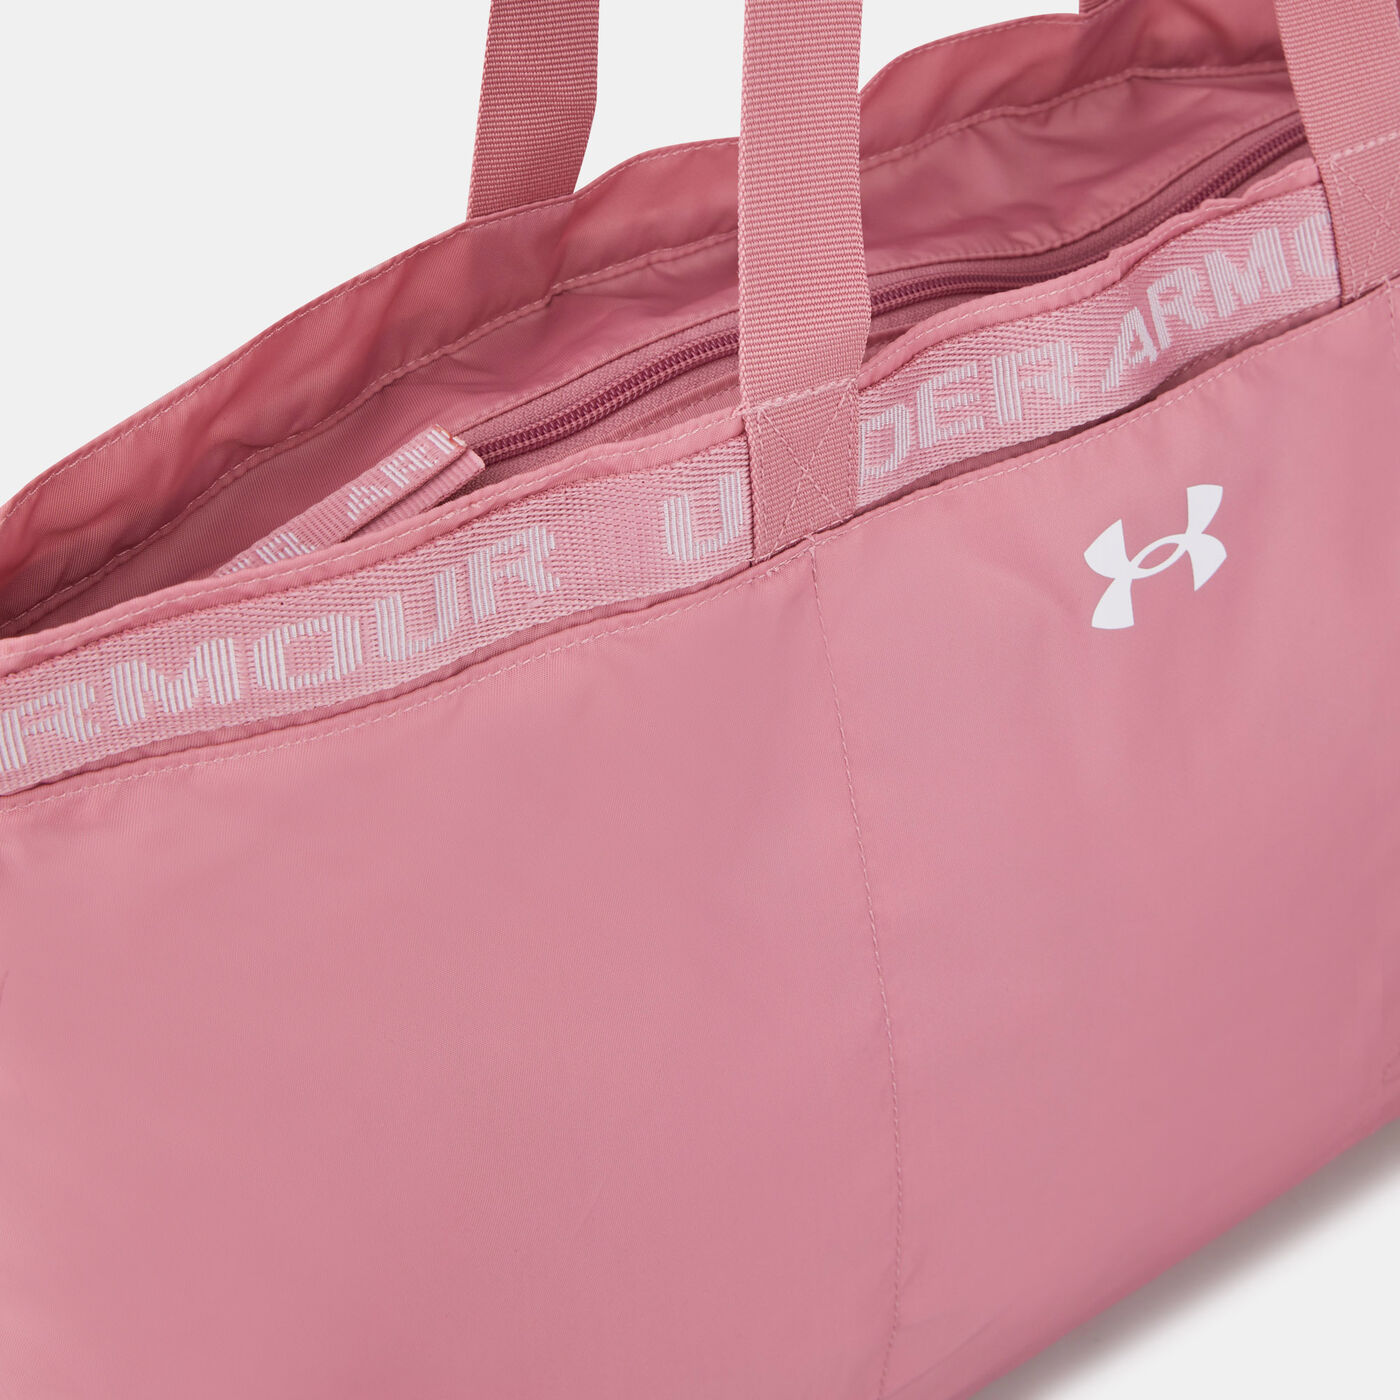 Women's UA Favorite Tote Bag